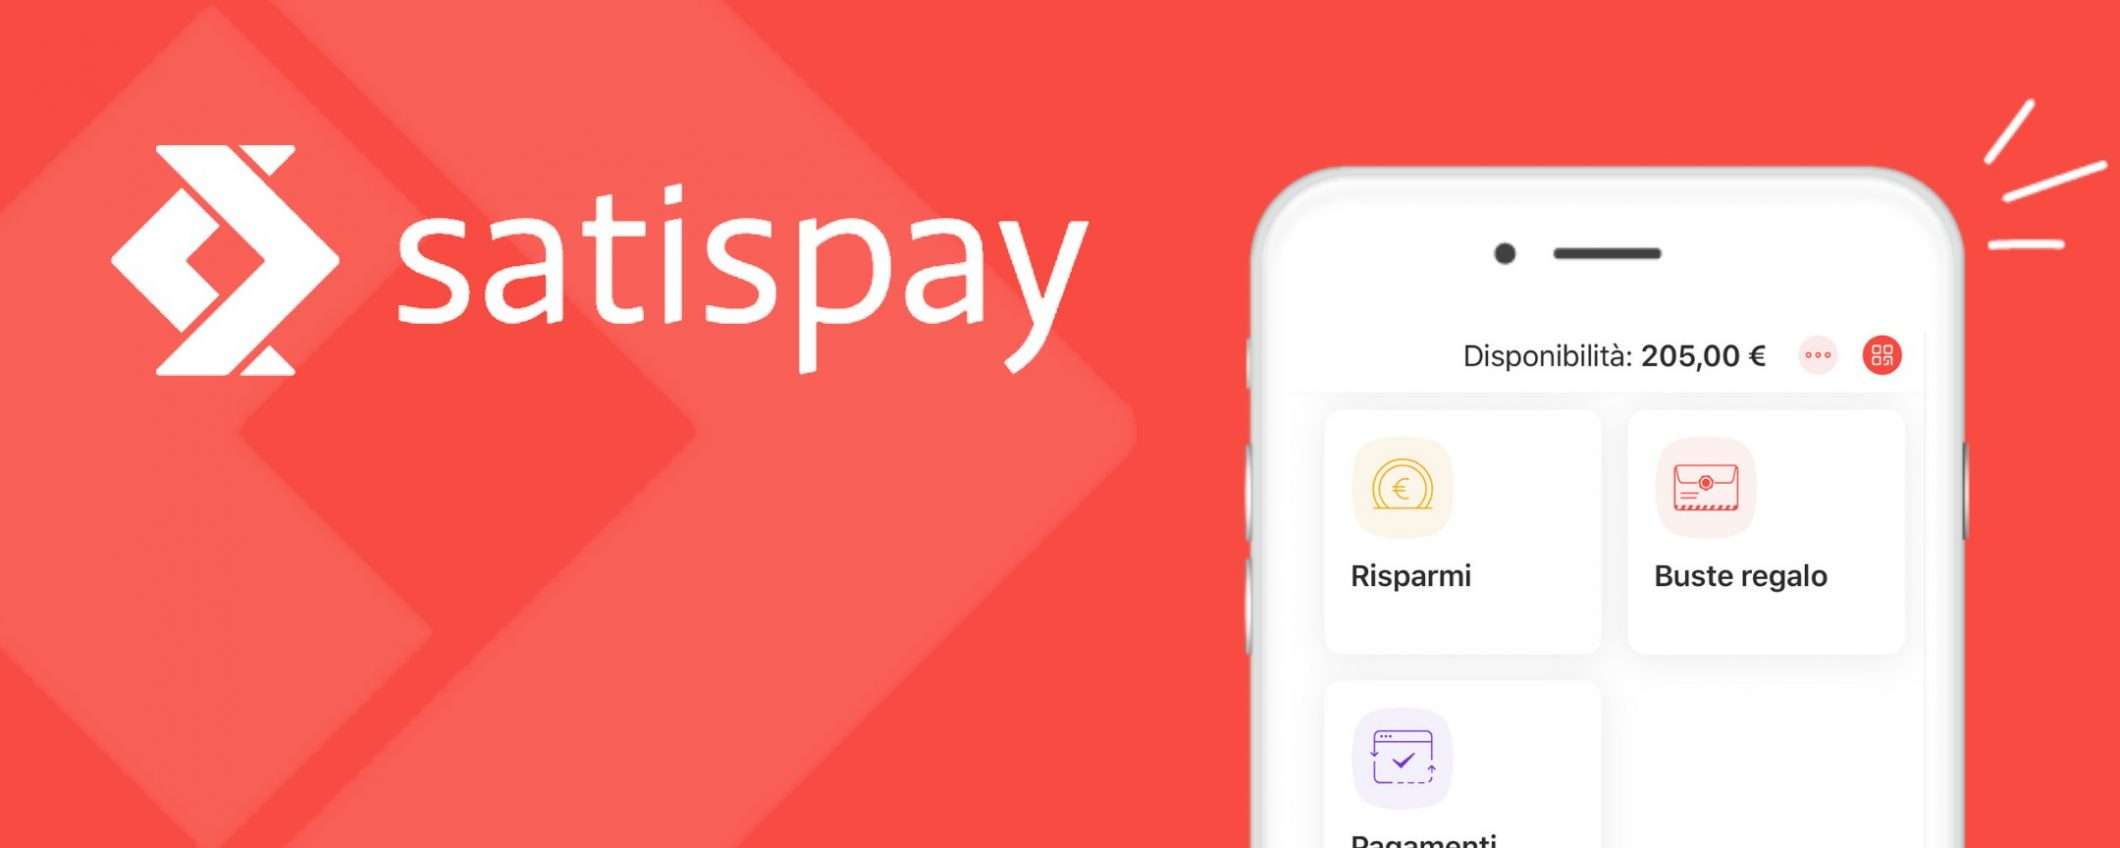 Un pagamento mobile su tre arriva da Satispay